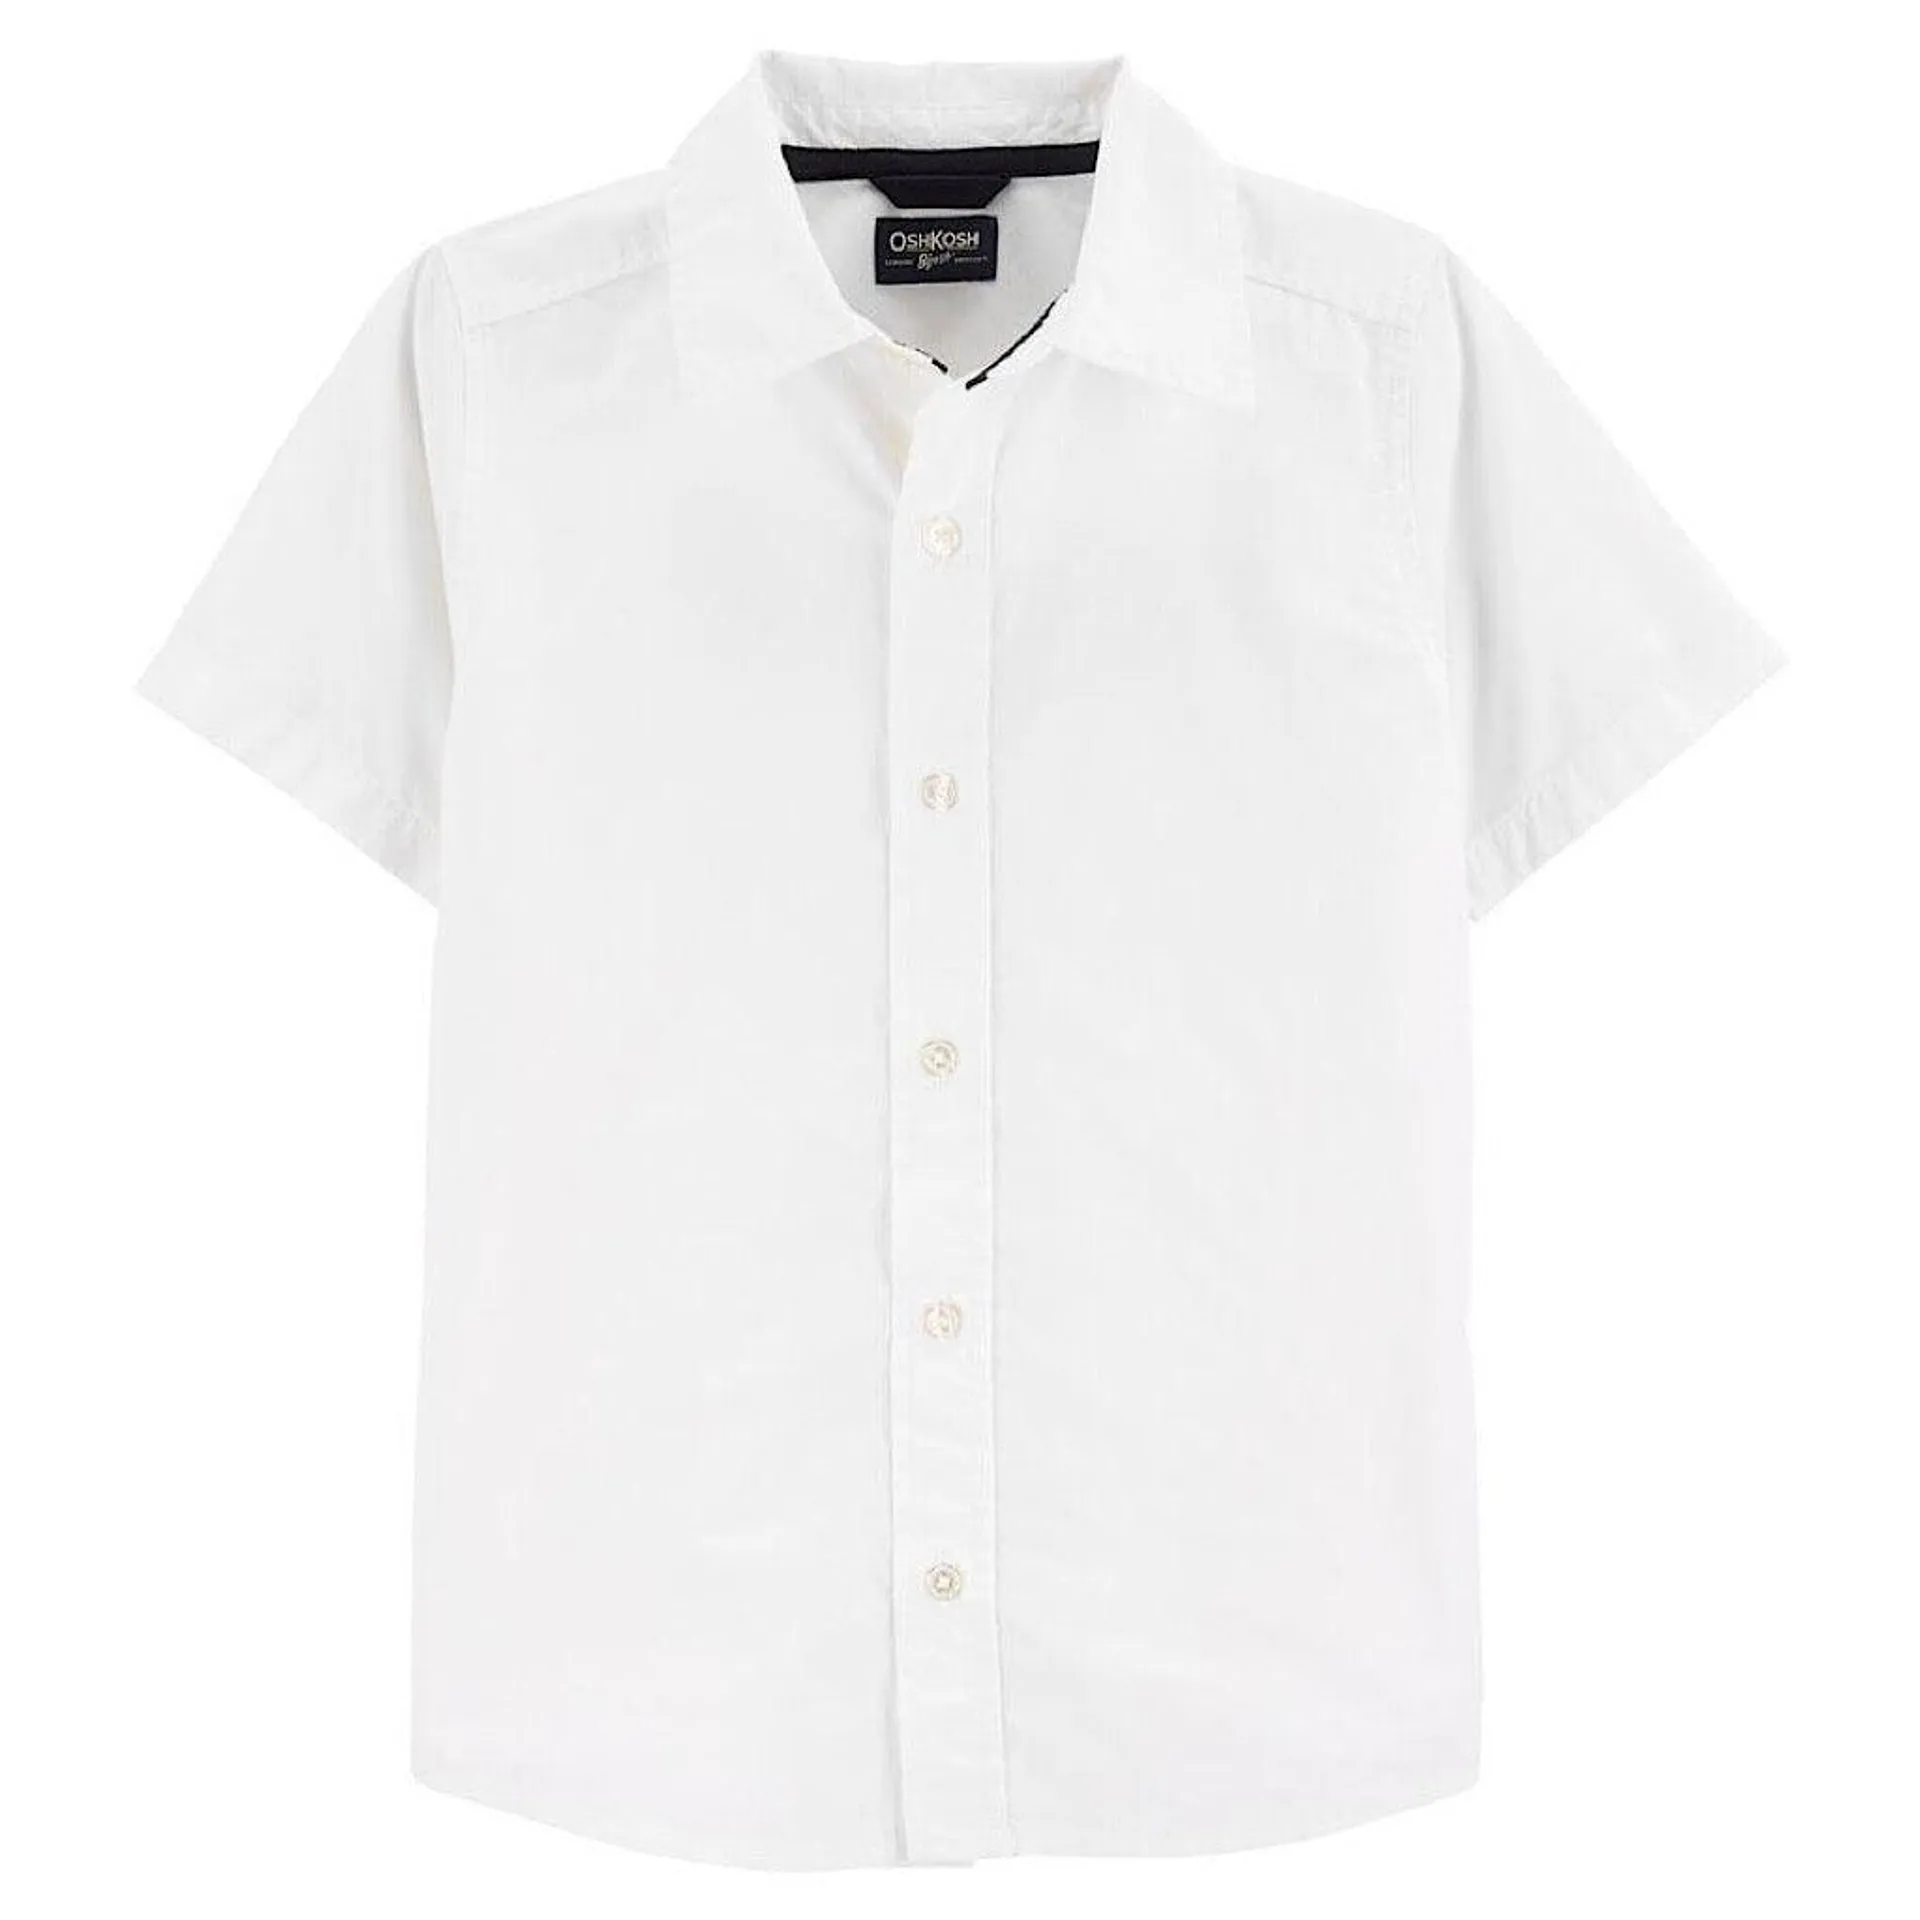 Camisa Oshkosh blanca de manga corta